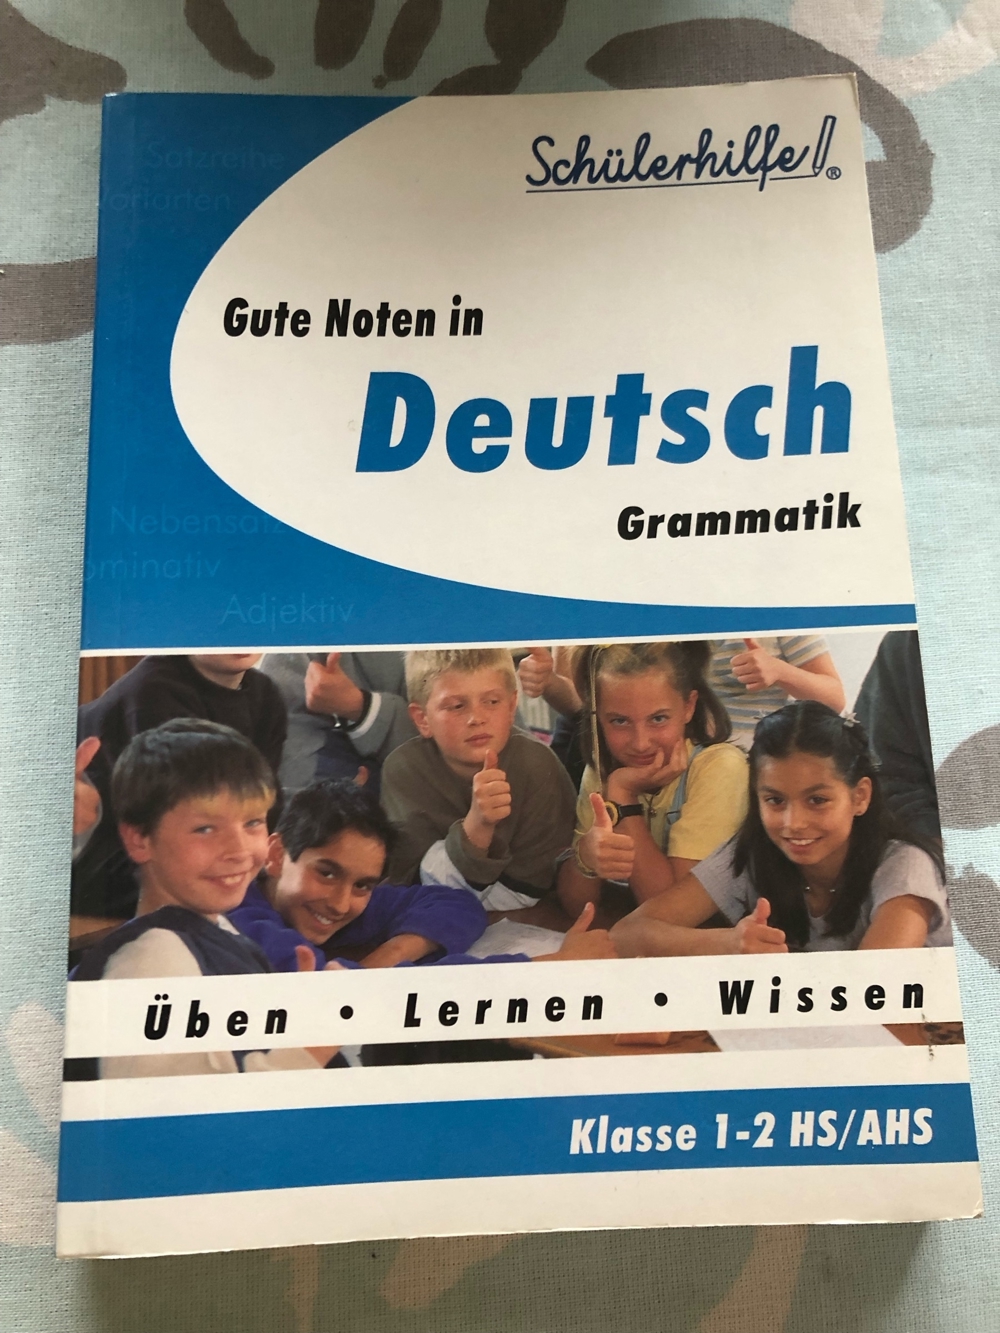 Gute Noten in Deutsch, Grammatik